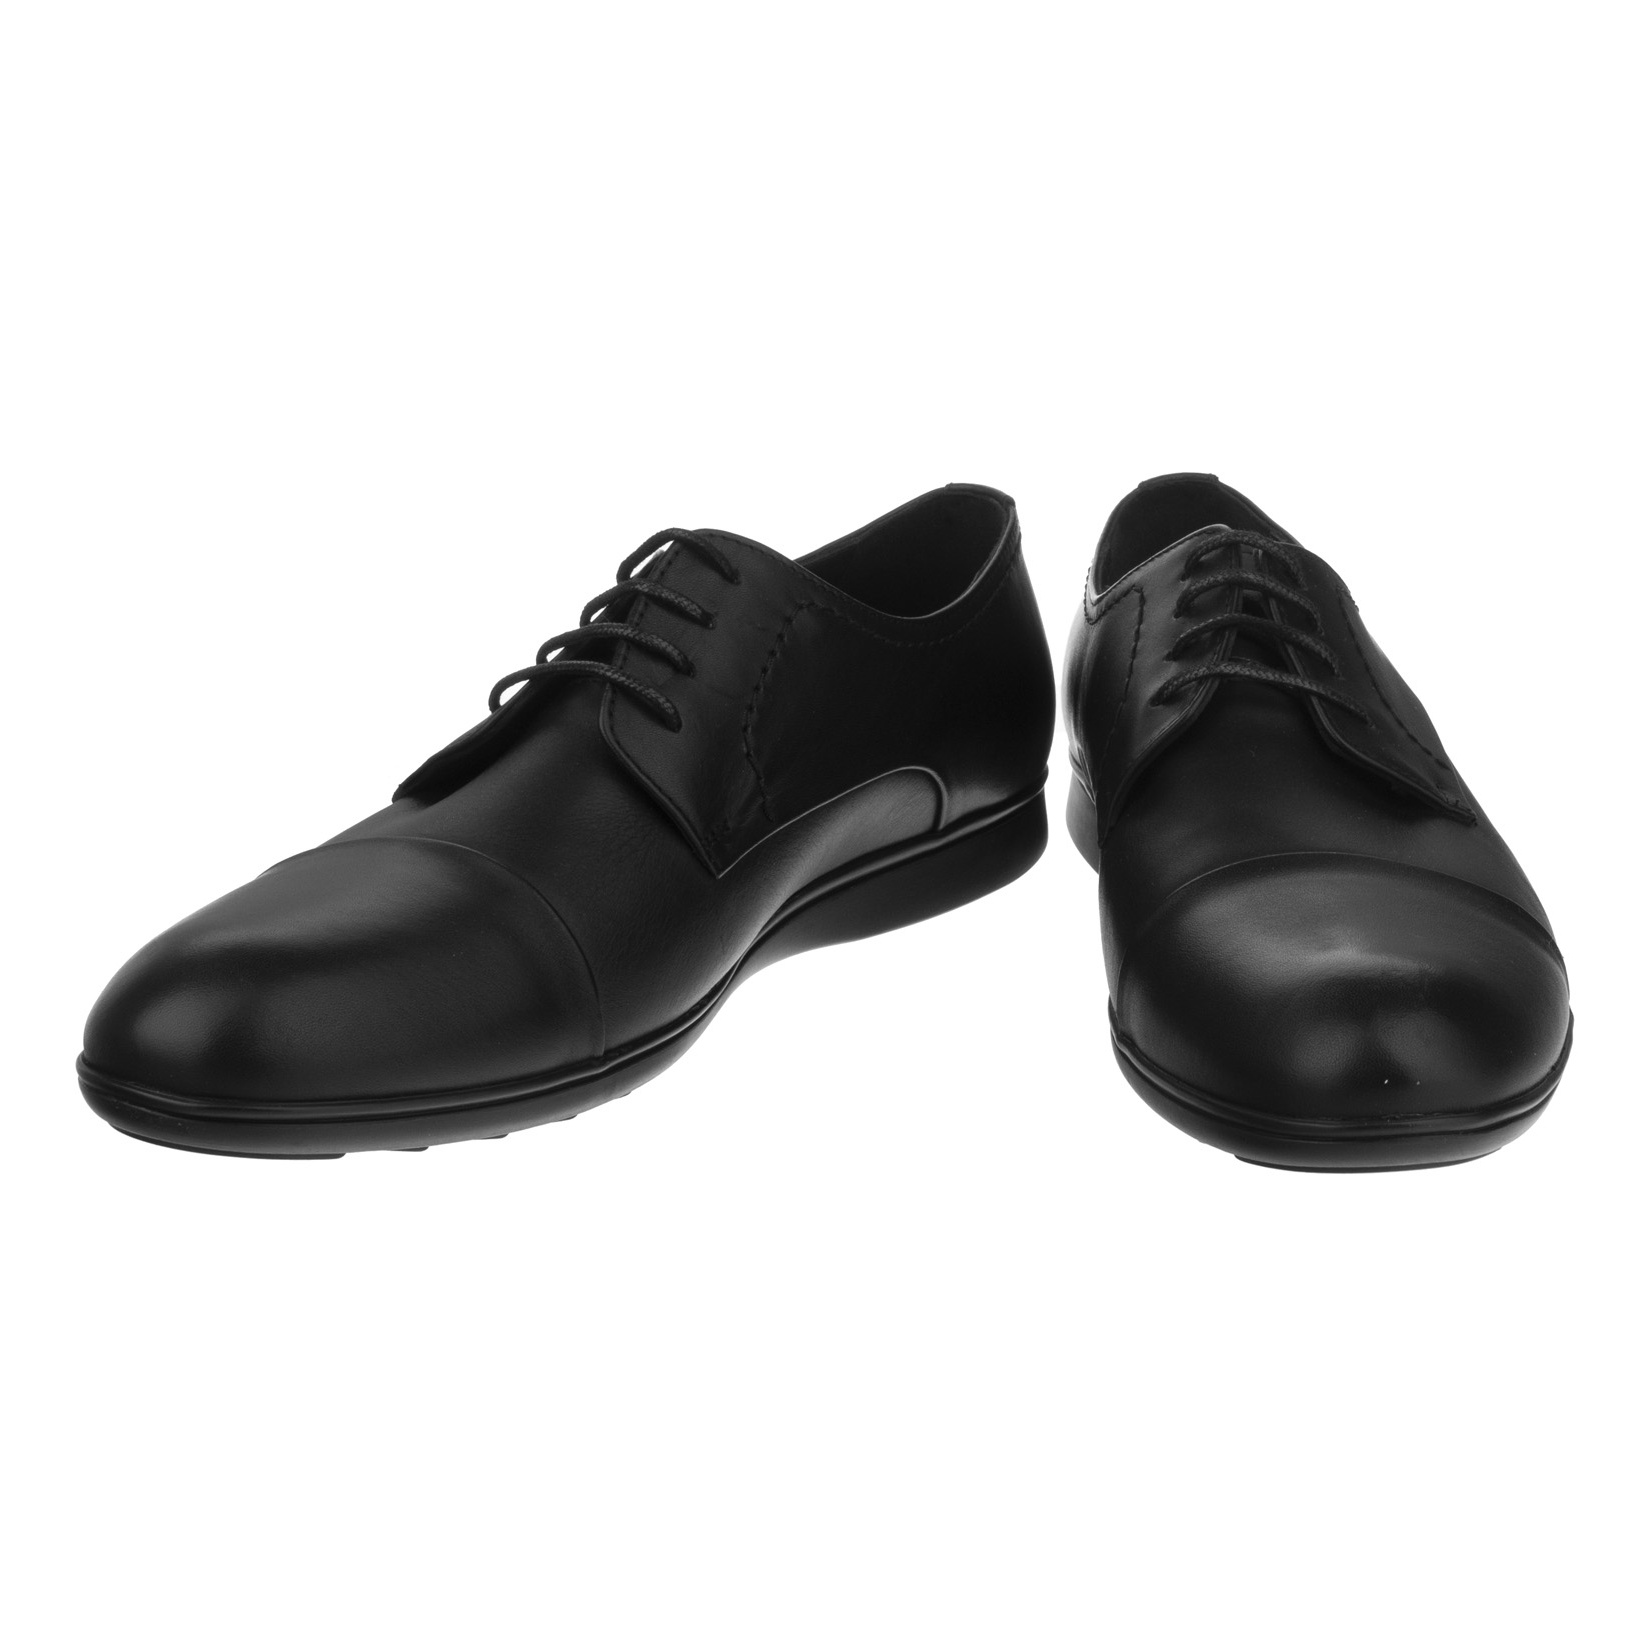 کفش مردانه گاندو مدل 713-99 - مشکی - 4